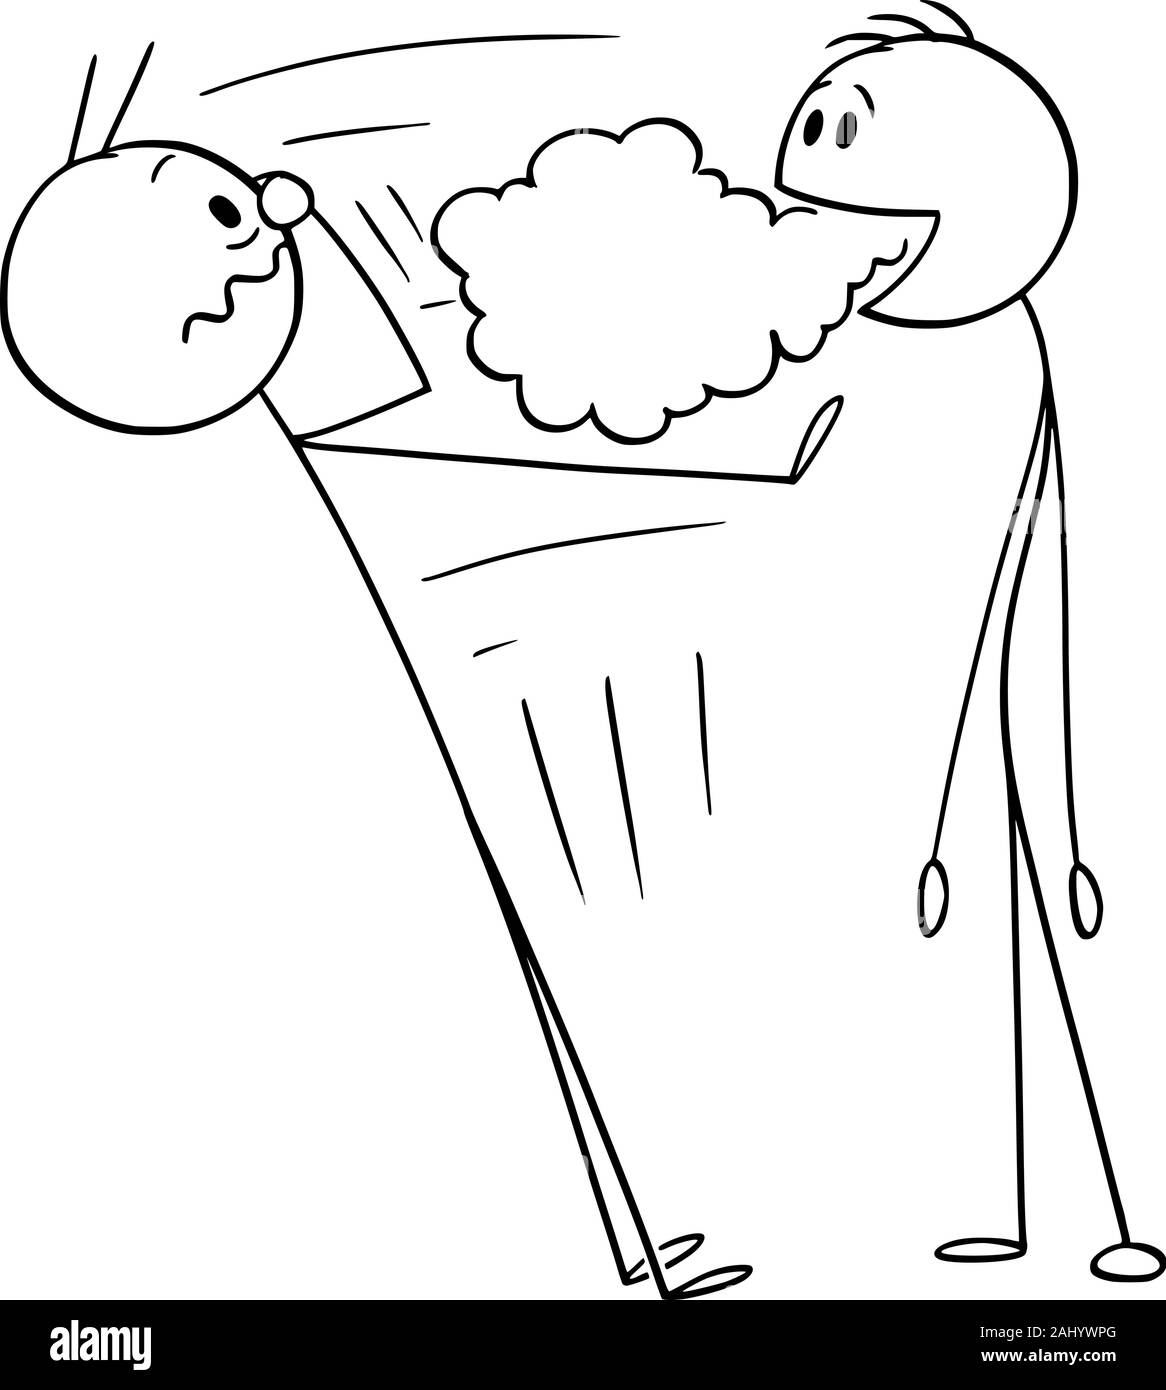 Vector cartoon stick figure dessin illustration conceptuelle de l'homme avec une mauvaise haleine, mauvaise odeur vient de sa bouche. Illustration de Vecteur